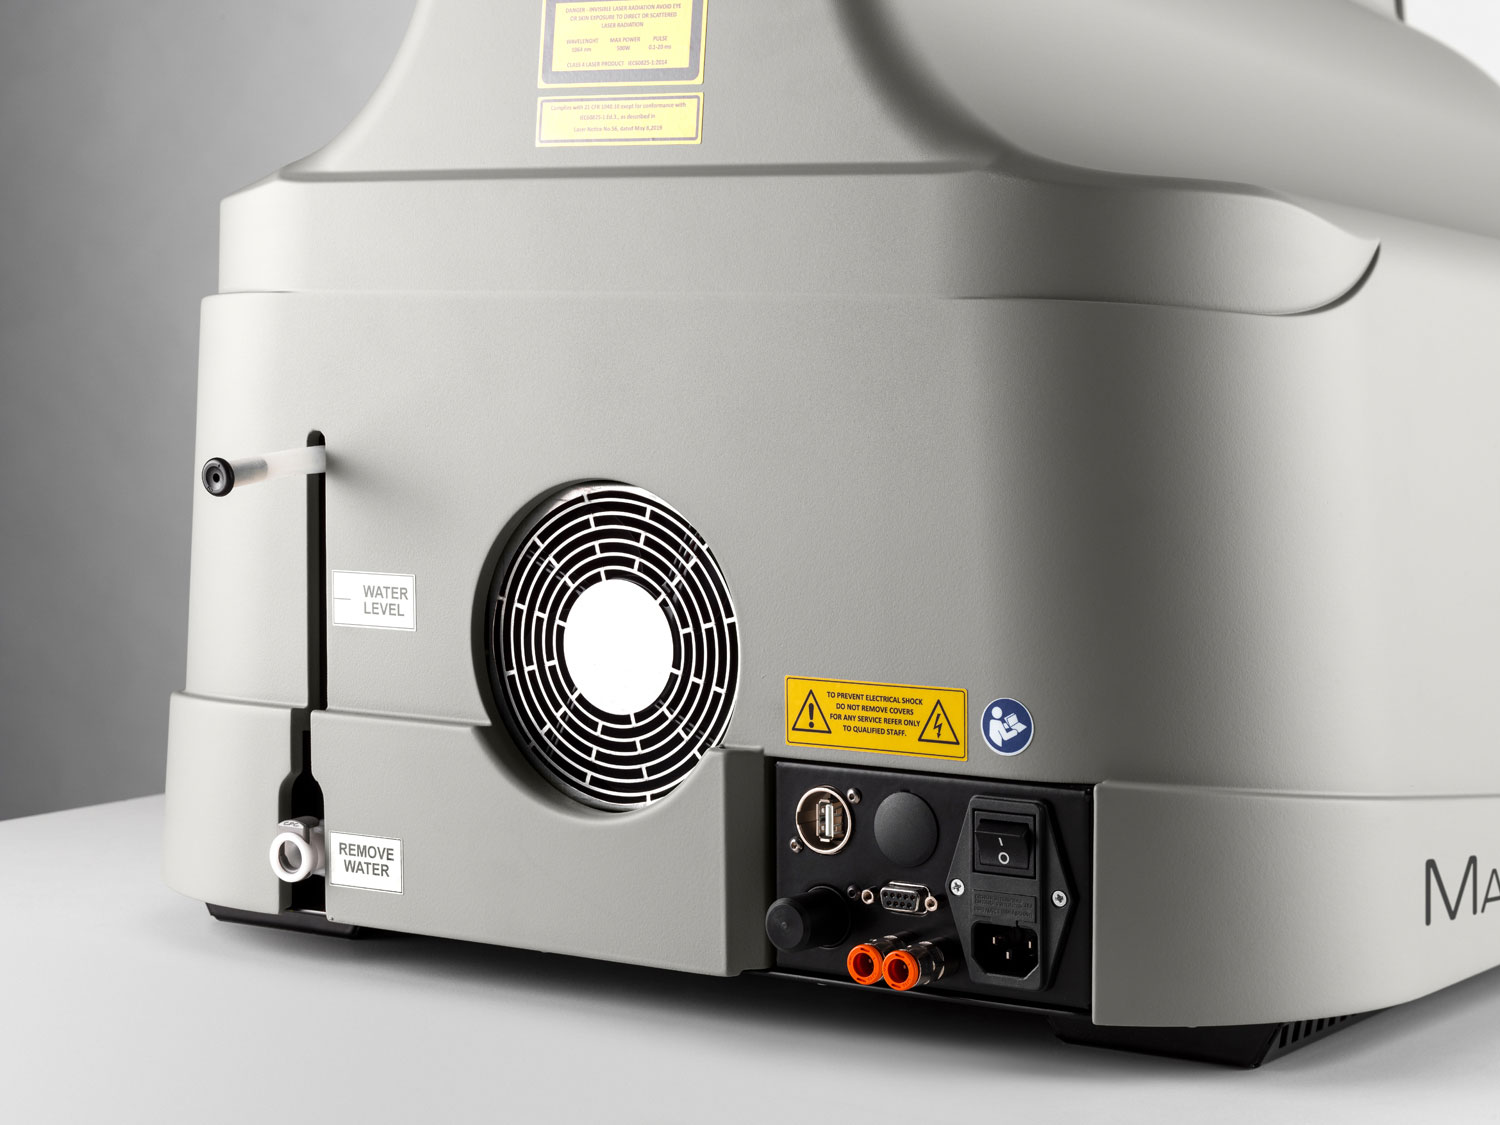 Kompakt-Schweißlaser Master 4.0 PLUS mit Stereo-Mikroskop und Smooth Spot